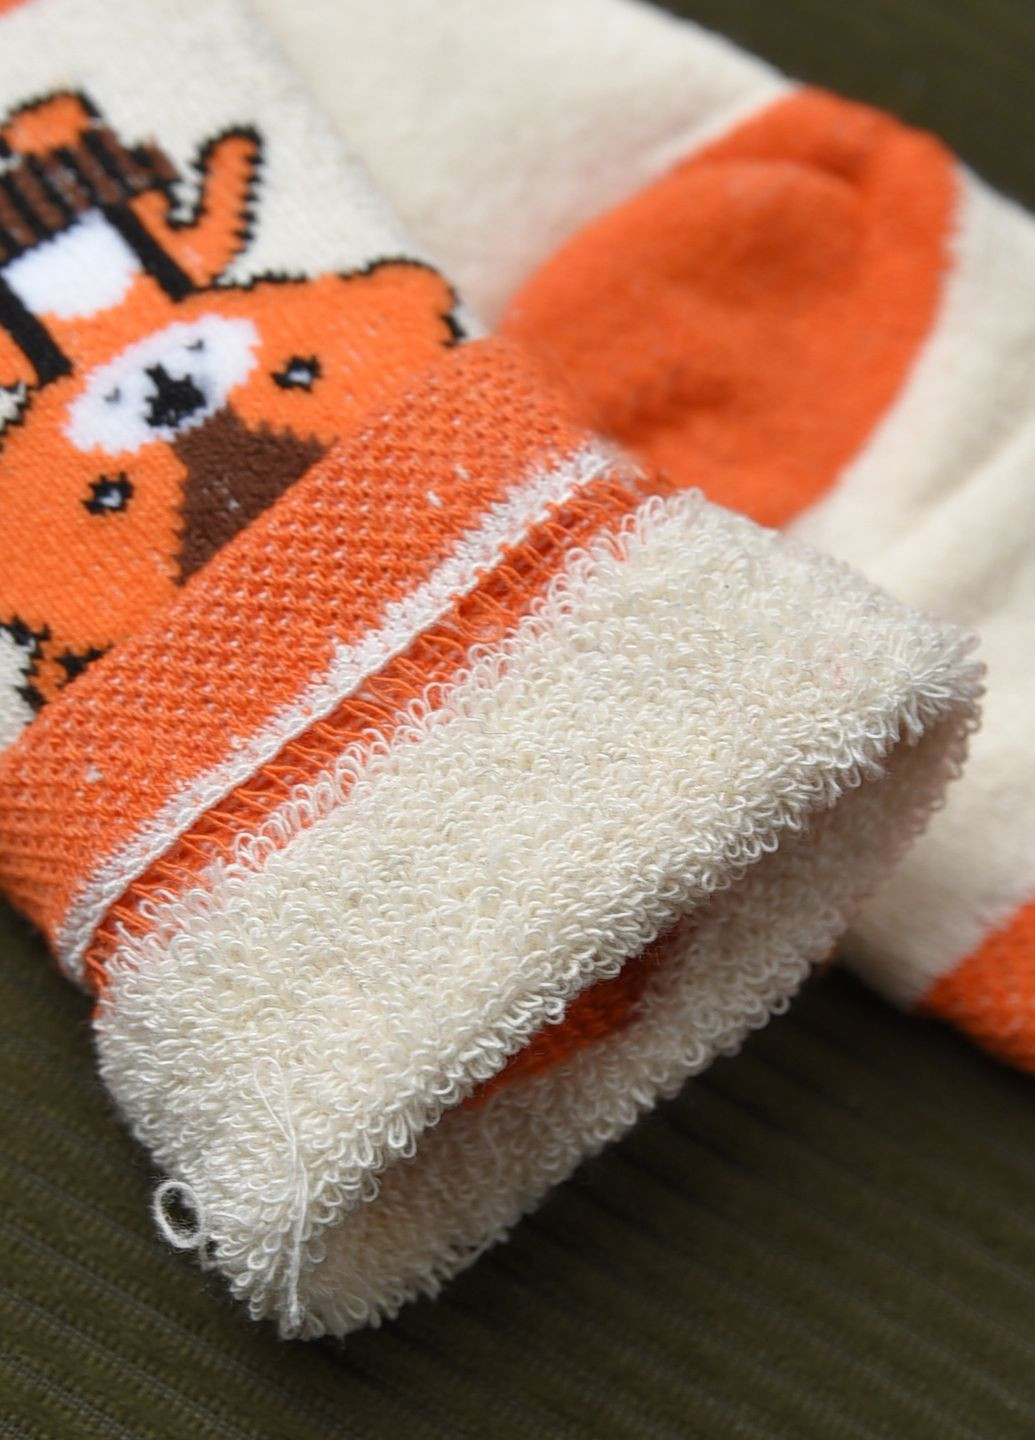 Шкарпетки махрові дитячі молочного кольору з малюнком Let's Shop (269692541)